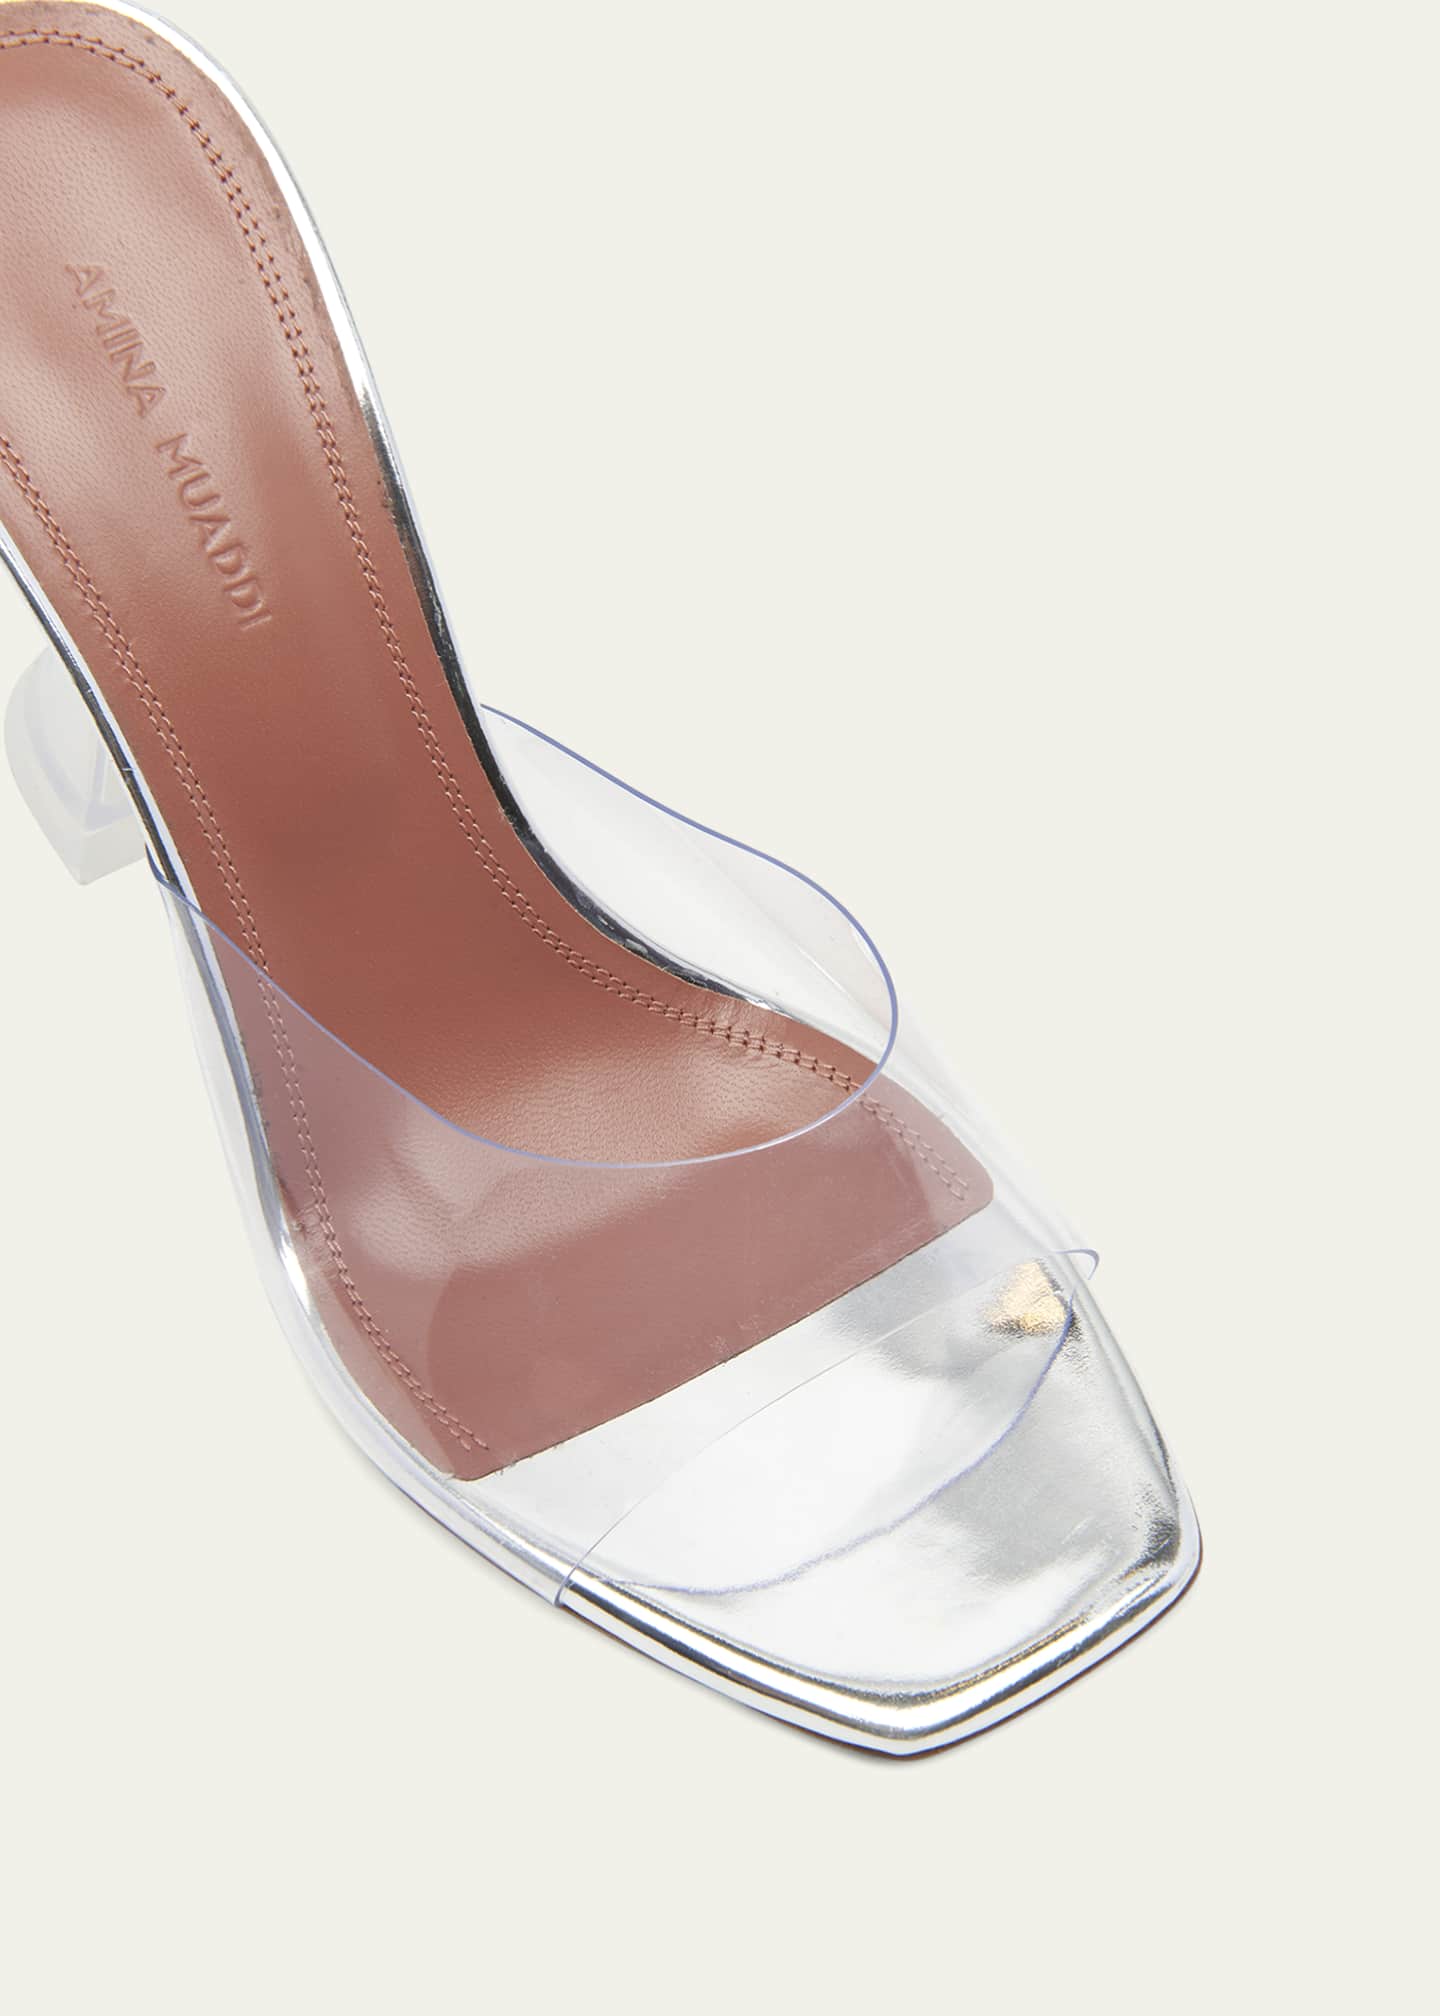 Amina Muaddi Lupita Glass Slide Sandals Image 5 of 5